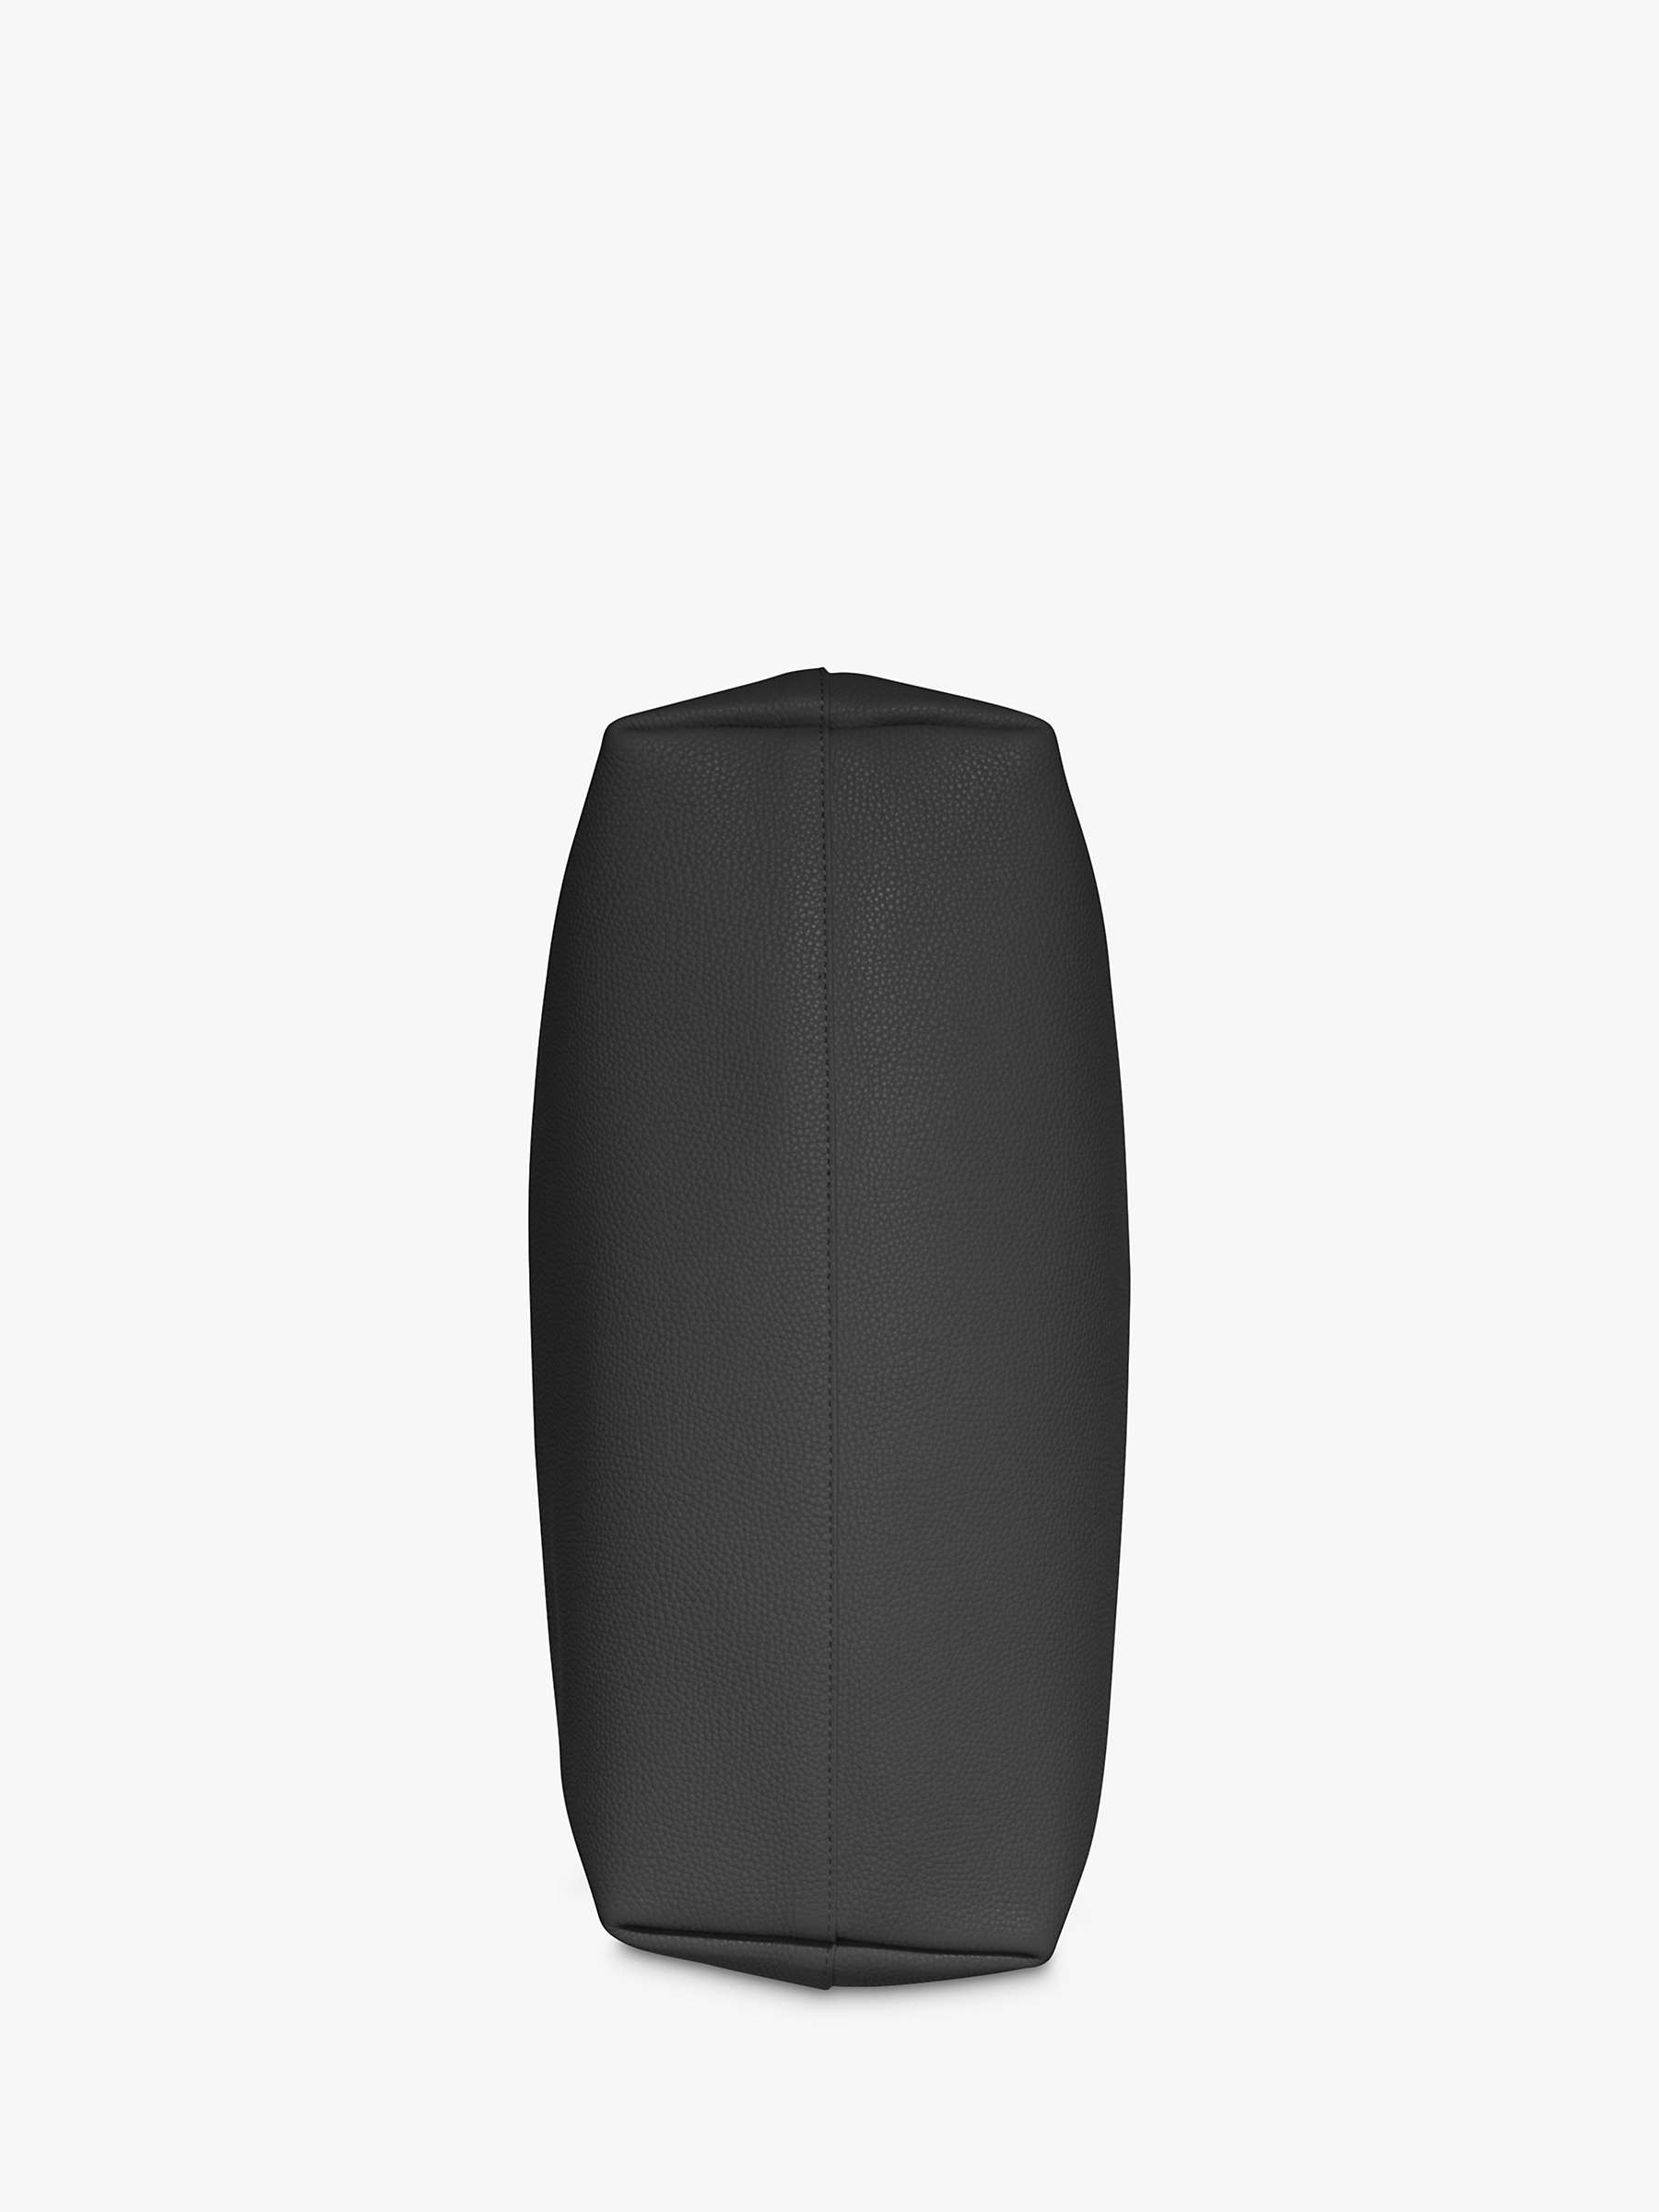 Buy DKNY Park Slope Leather Tote Bag, Black/Gold Online at johnlewis.com